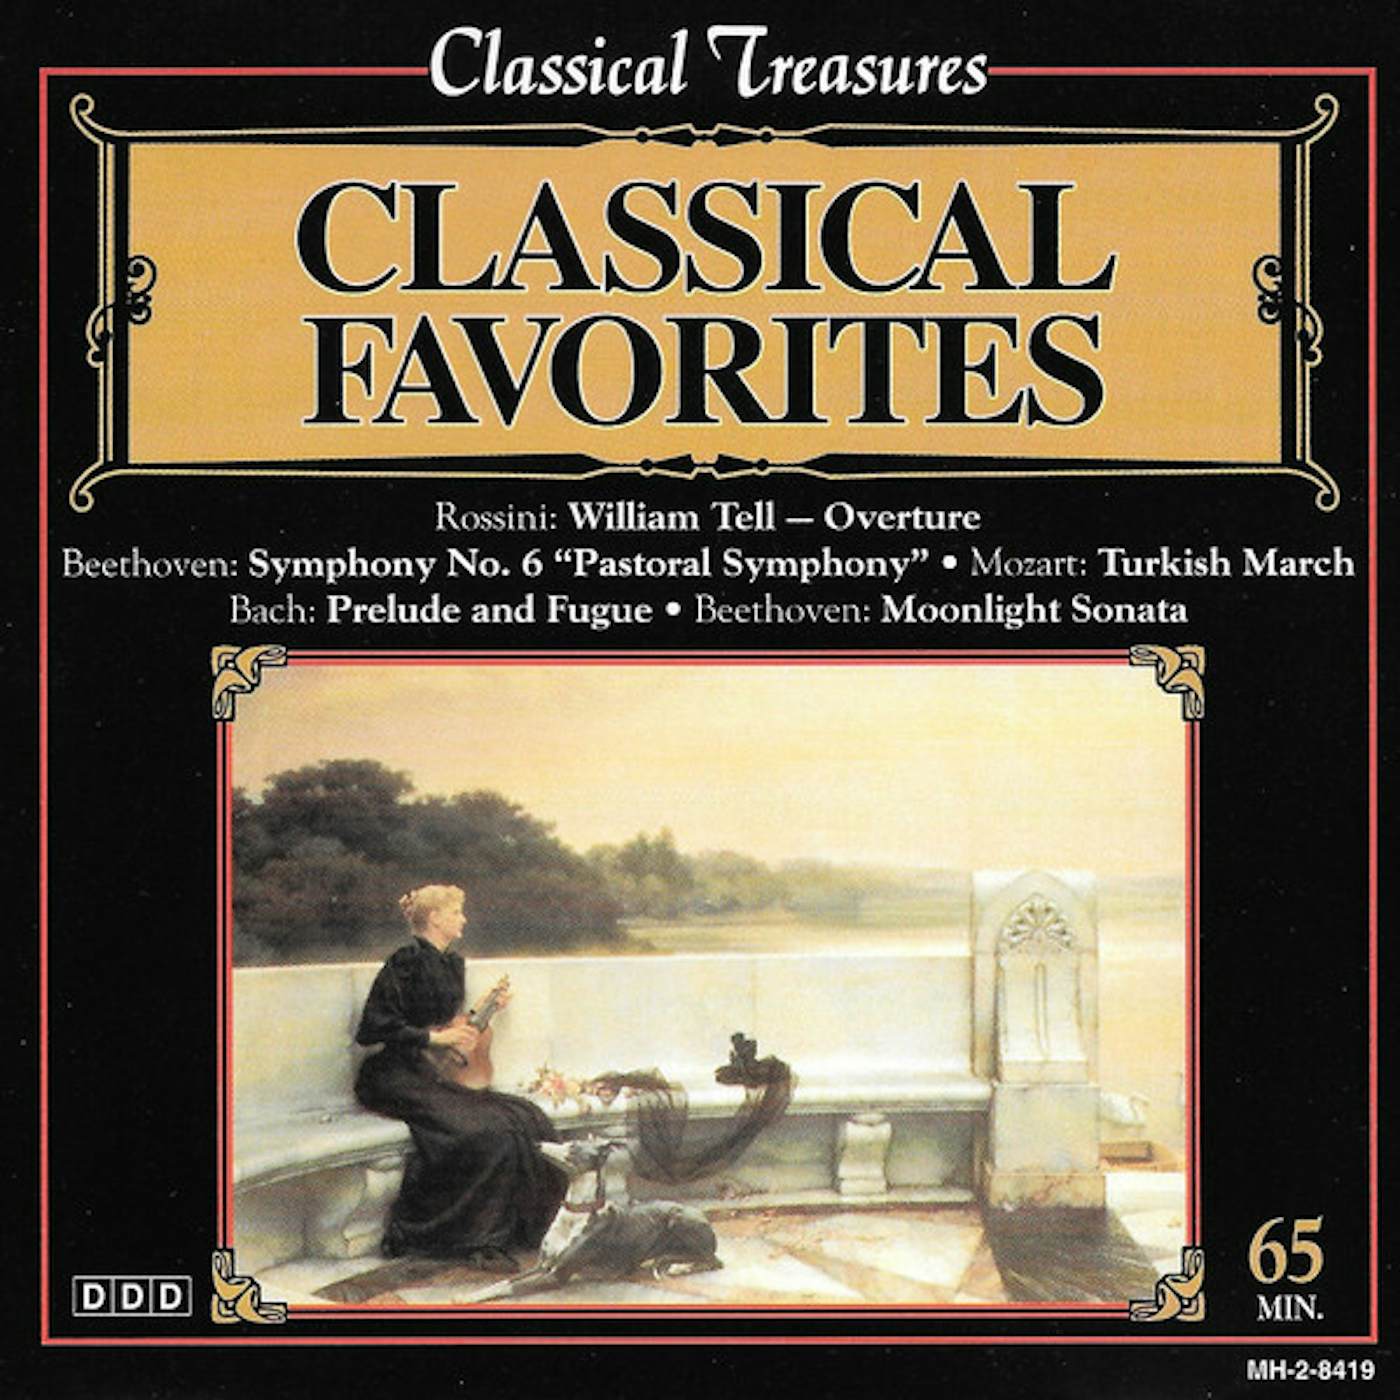 Classical Treasures CLASSICAL FAVORITES CD